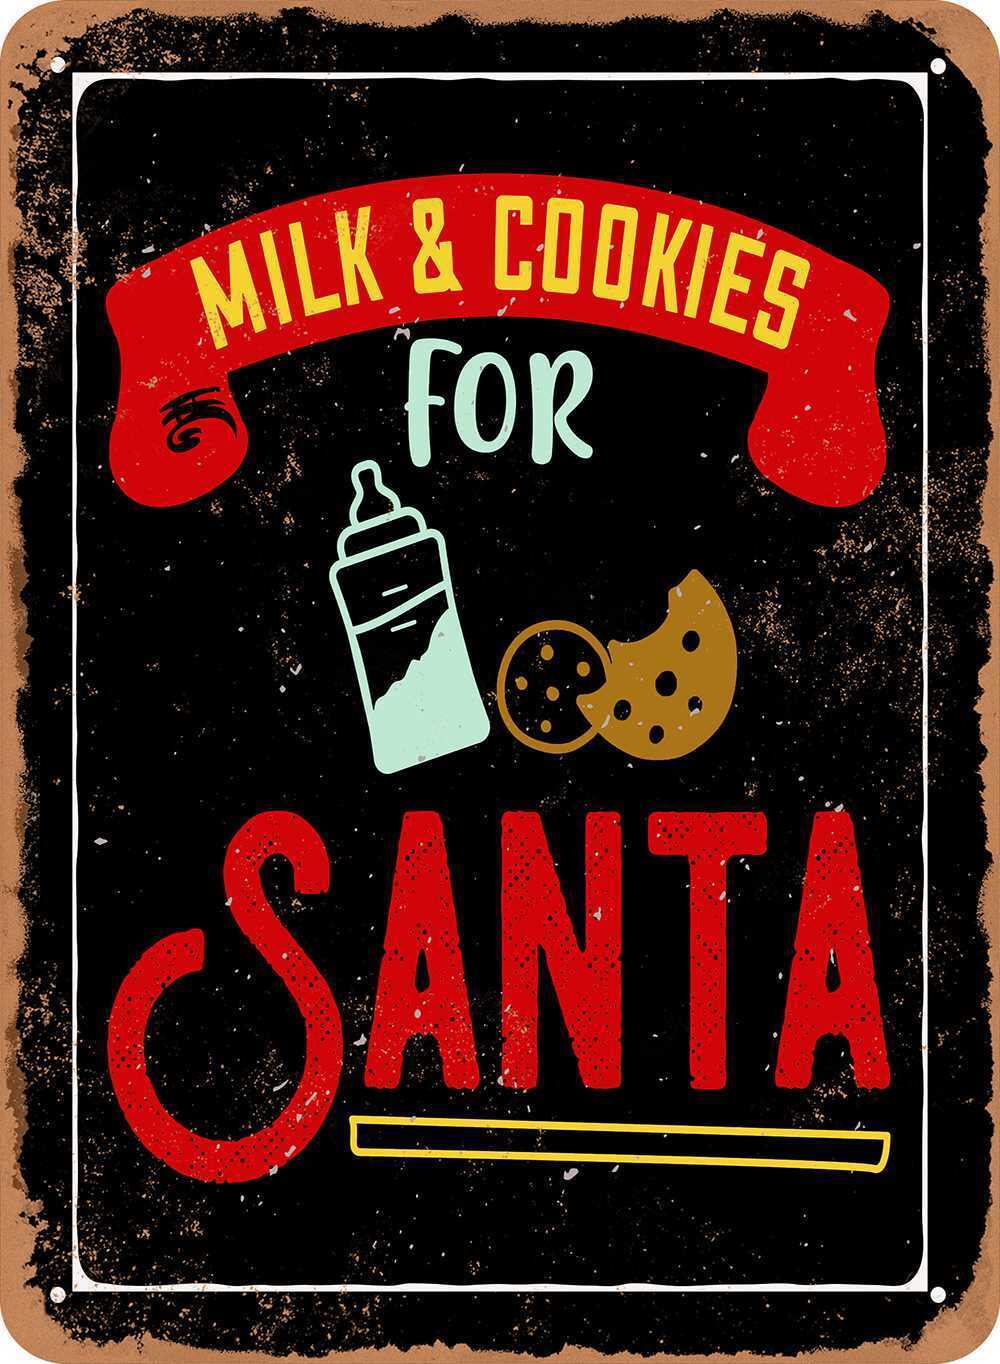 Metal Sign - Milk & Cookies For Santa - Vintage Look